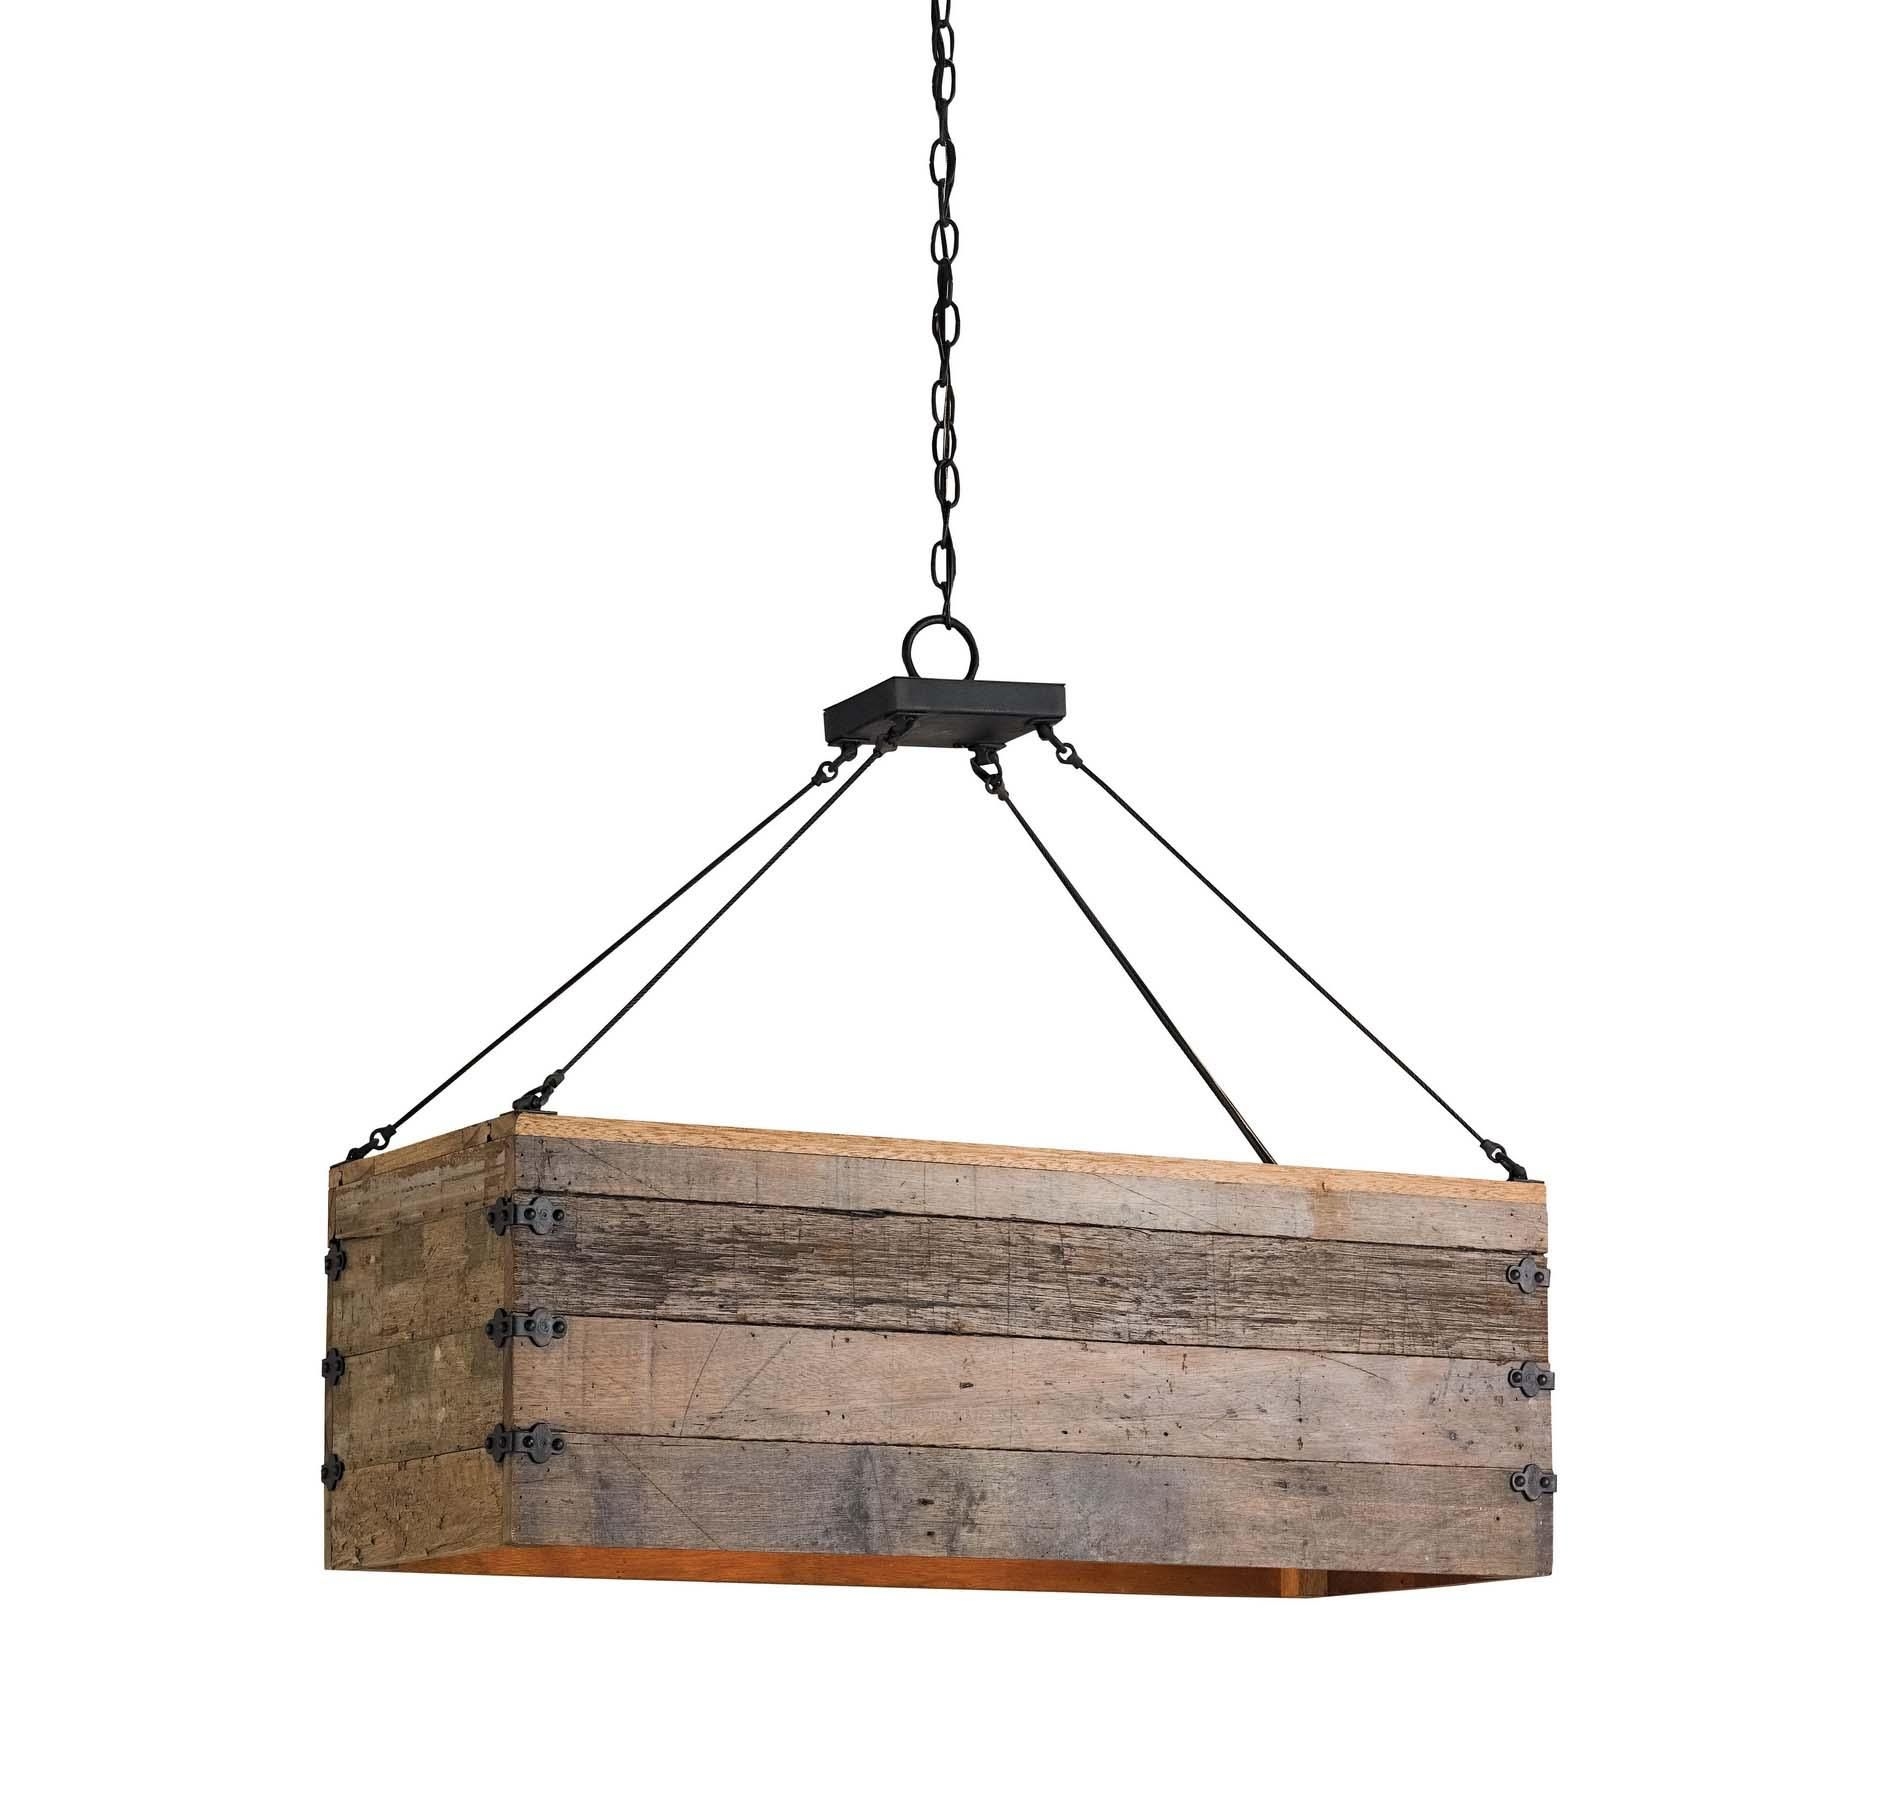 Diy wood chandelier